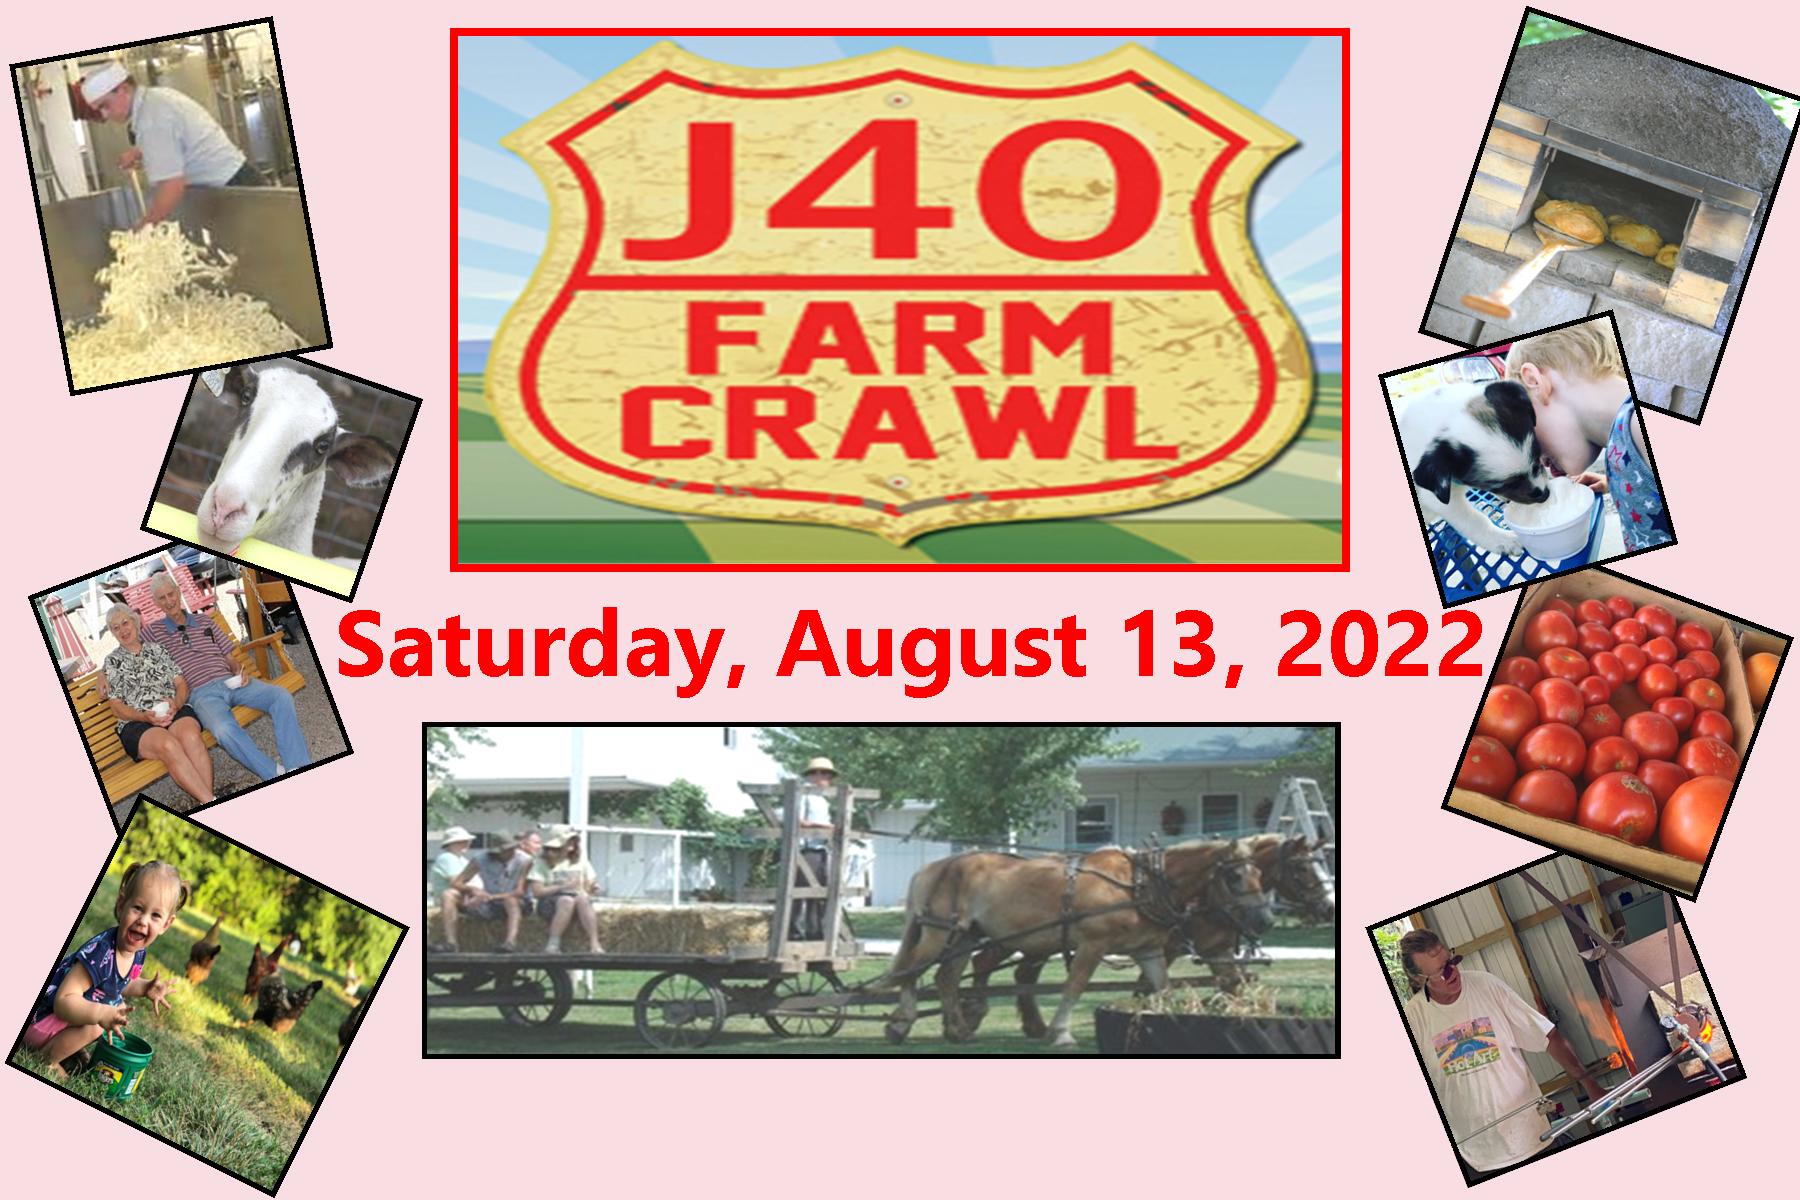 2022 J40 Farm Crawl